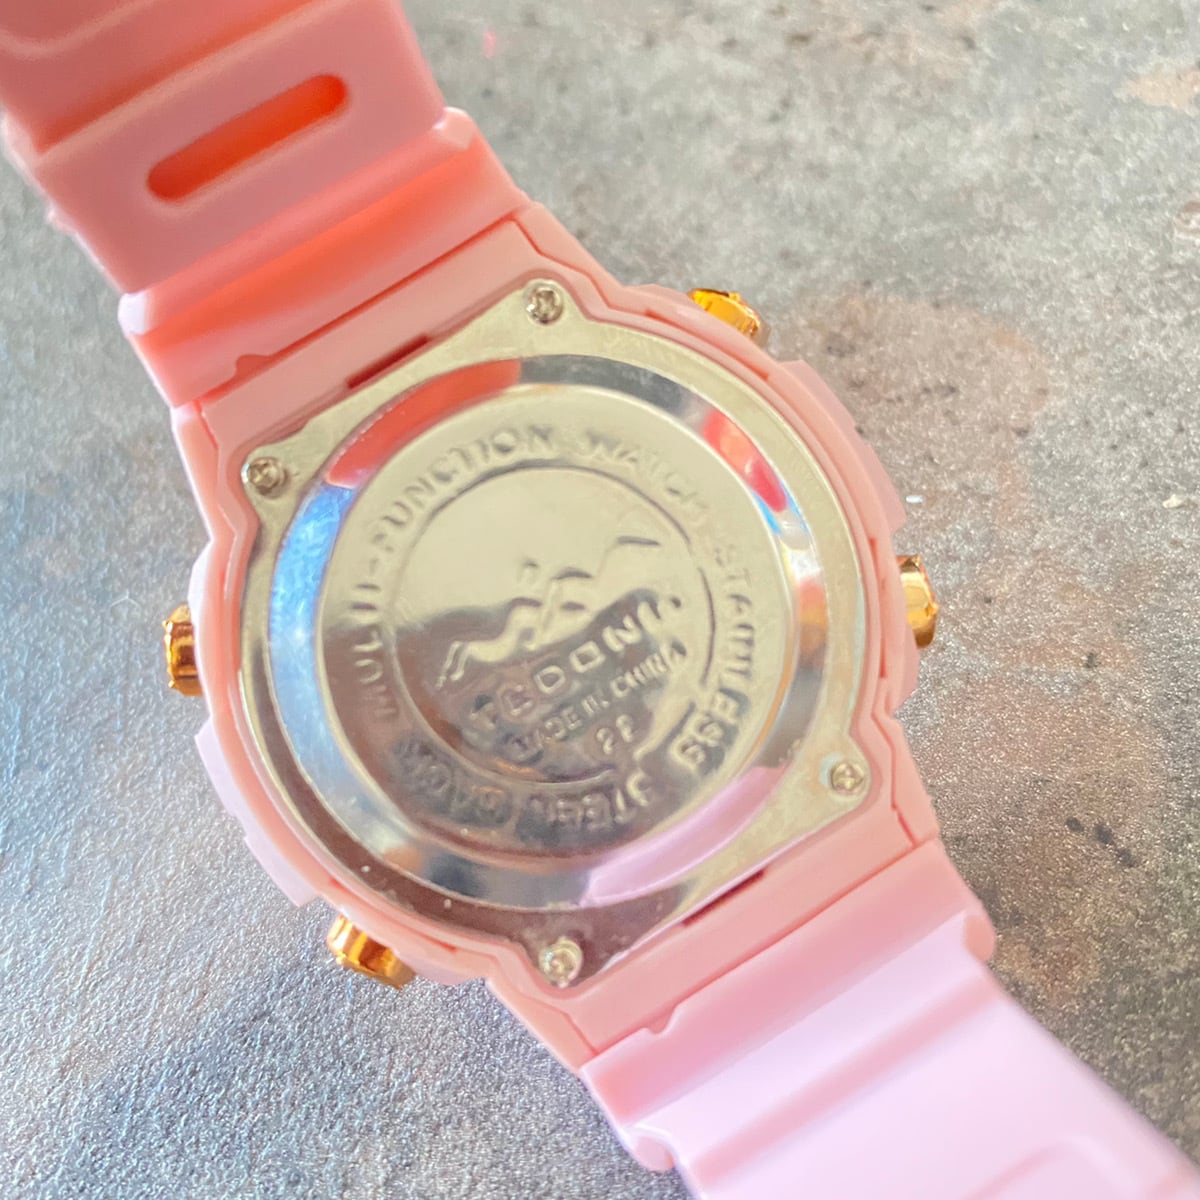 ❤ハイセンスなメンズ腕時計☆珍しい天然木腕時計☆贈り物に最適♪❤